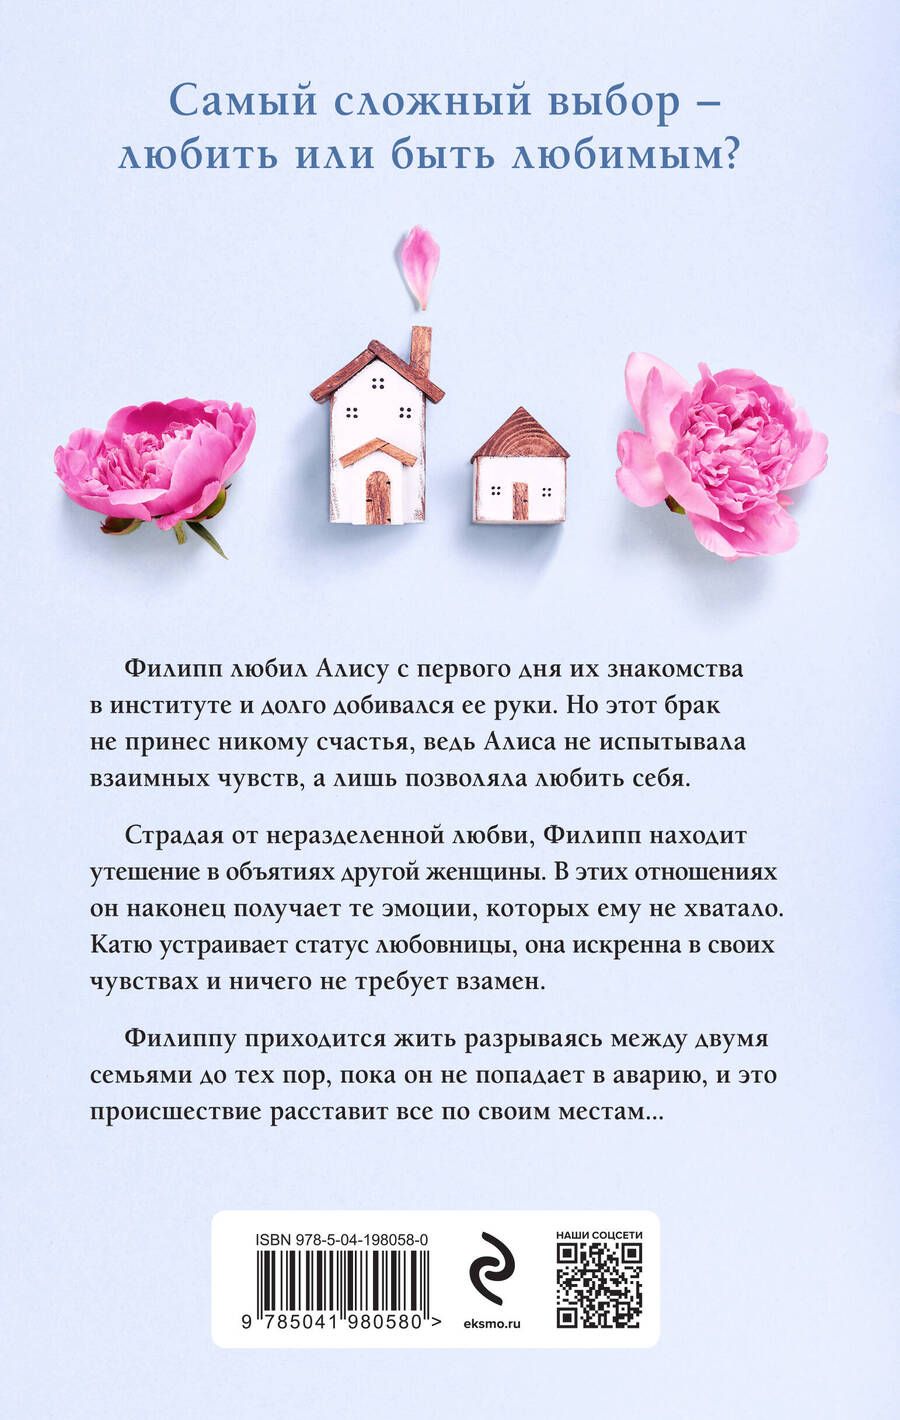 Обложка книги "Вера Колочкова: Другая семья"